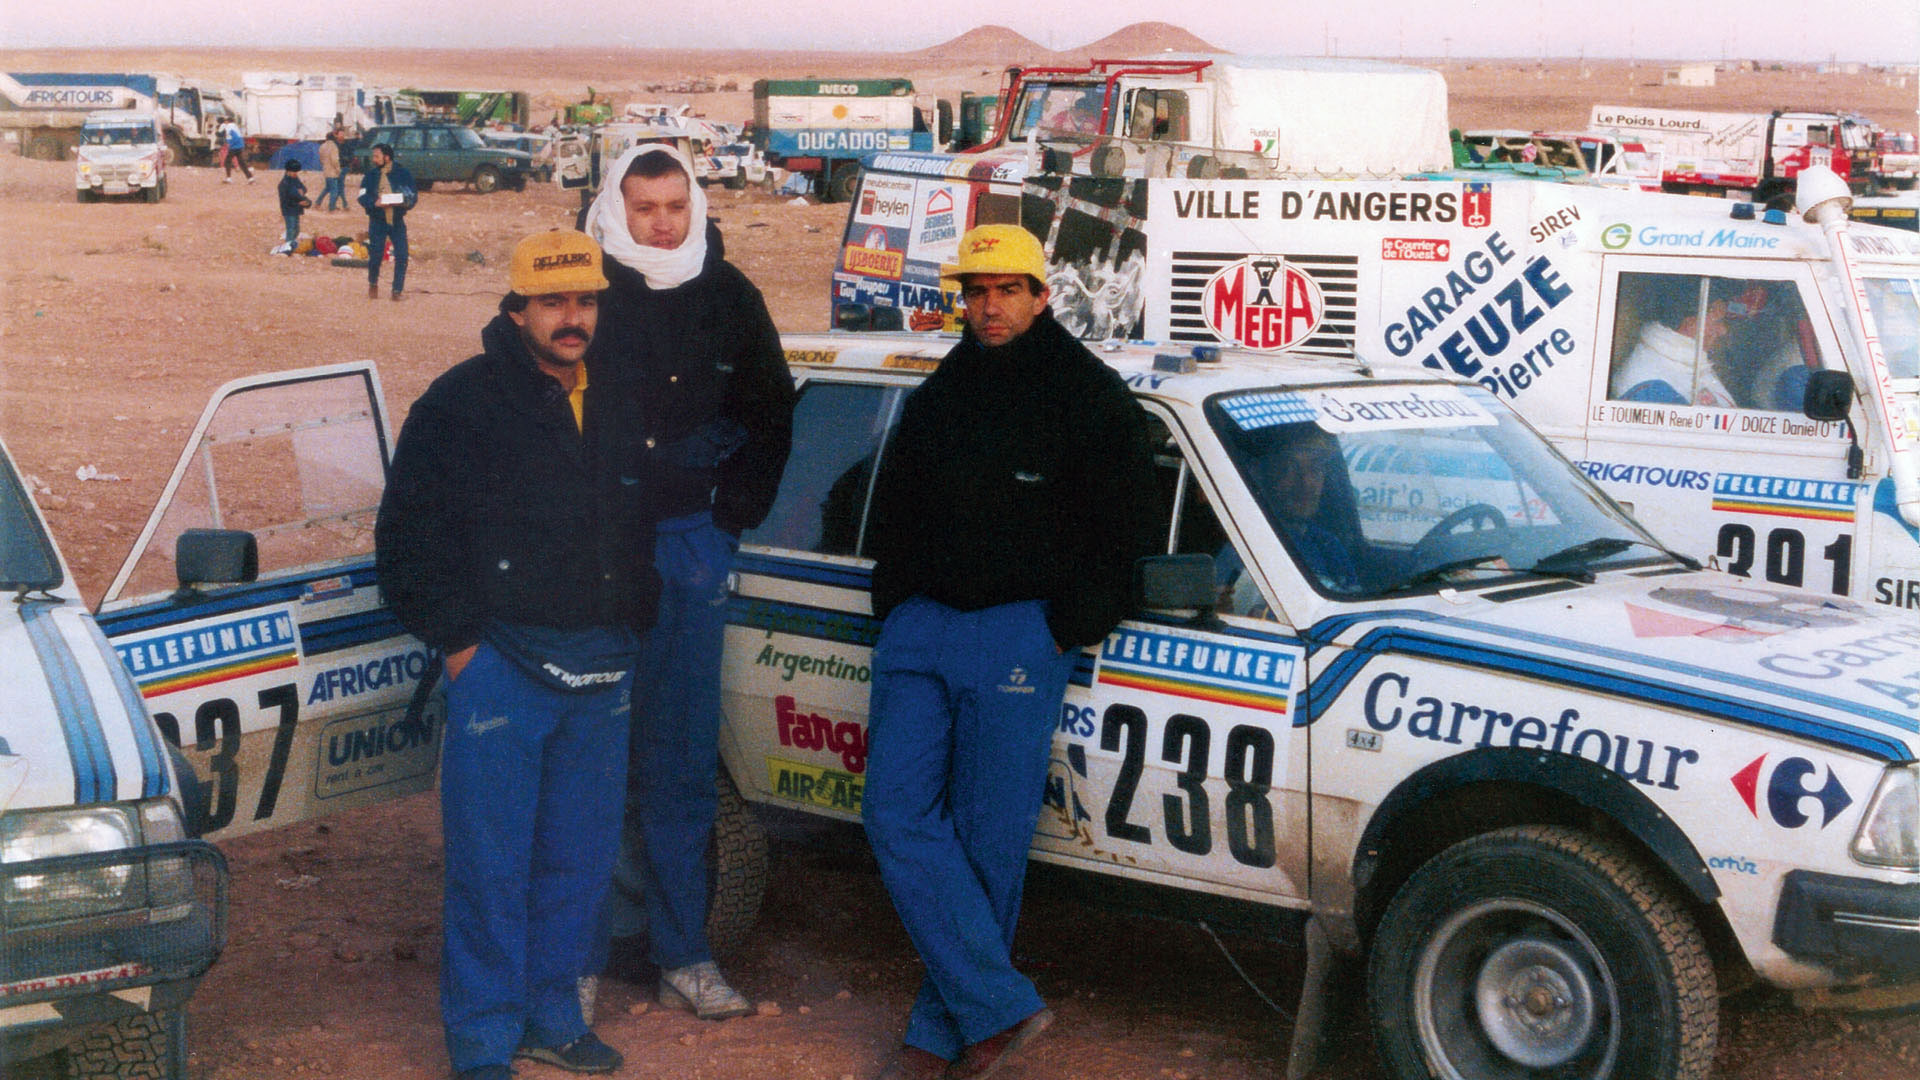 El auto 238 fue el que tuvo el problema mecánico que decidió al equipo a abandonar y regresar juntos a Argelia